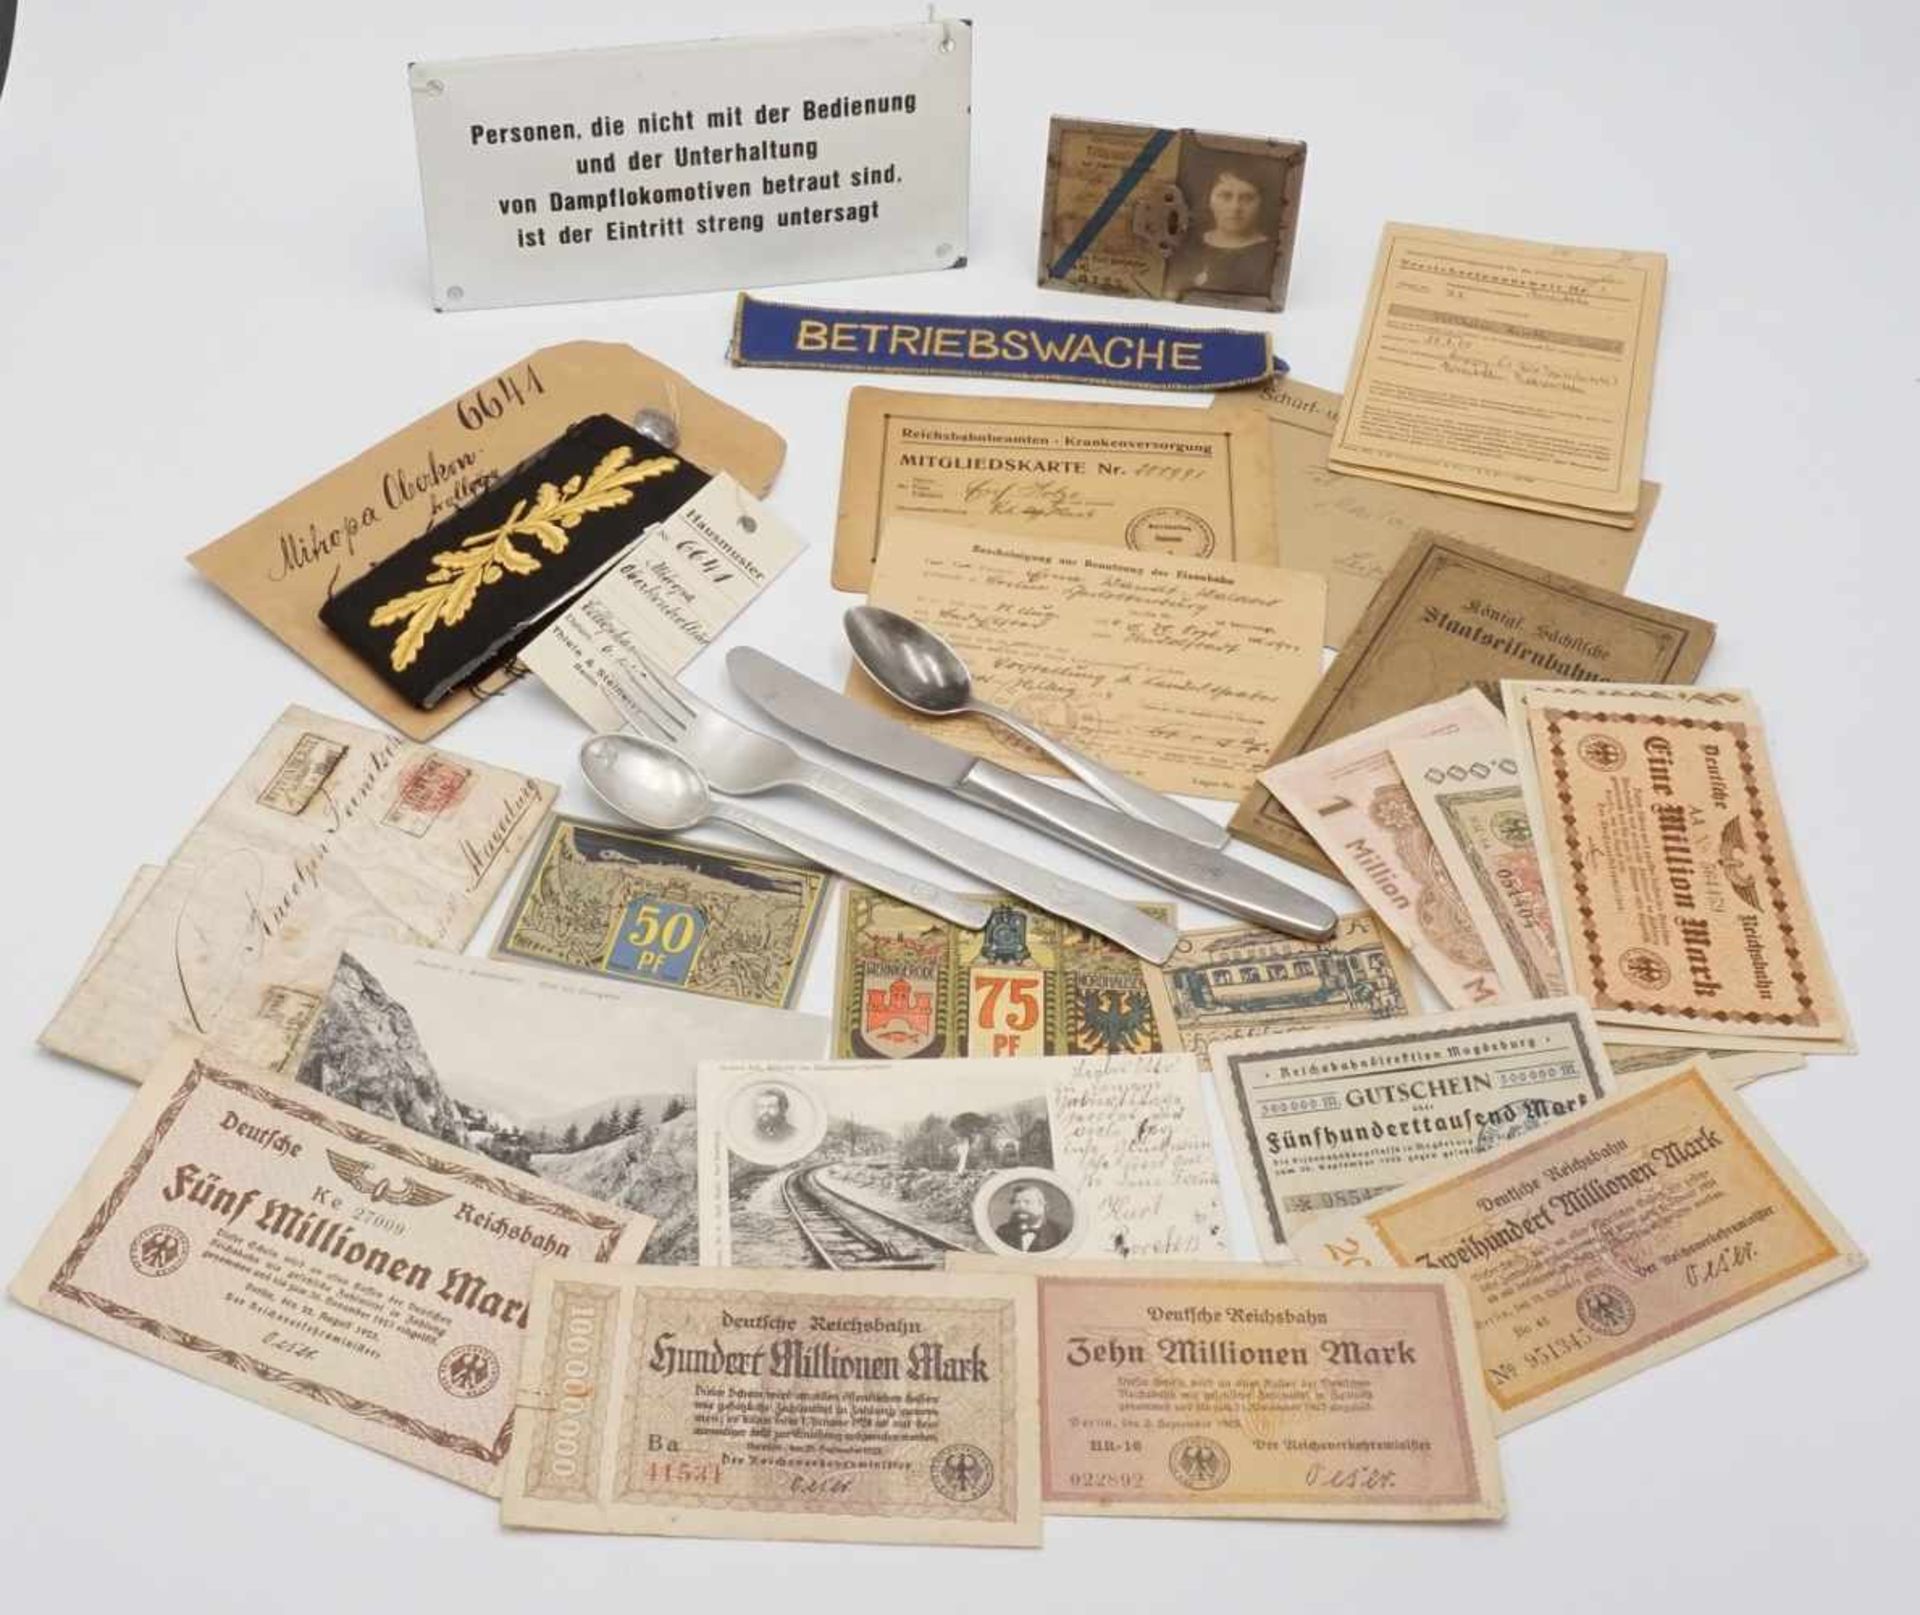 Eisenbahner-NachlassMonatskarte, 12 Geldscheine, diverse Dokumente, Aufnäher "Betriebswache",